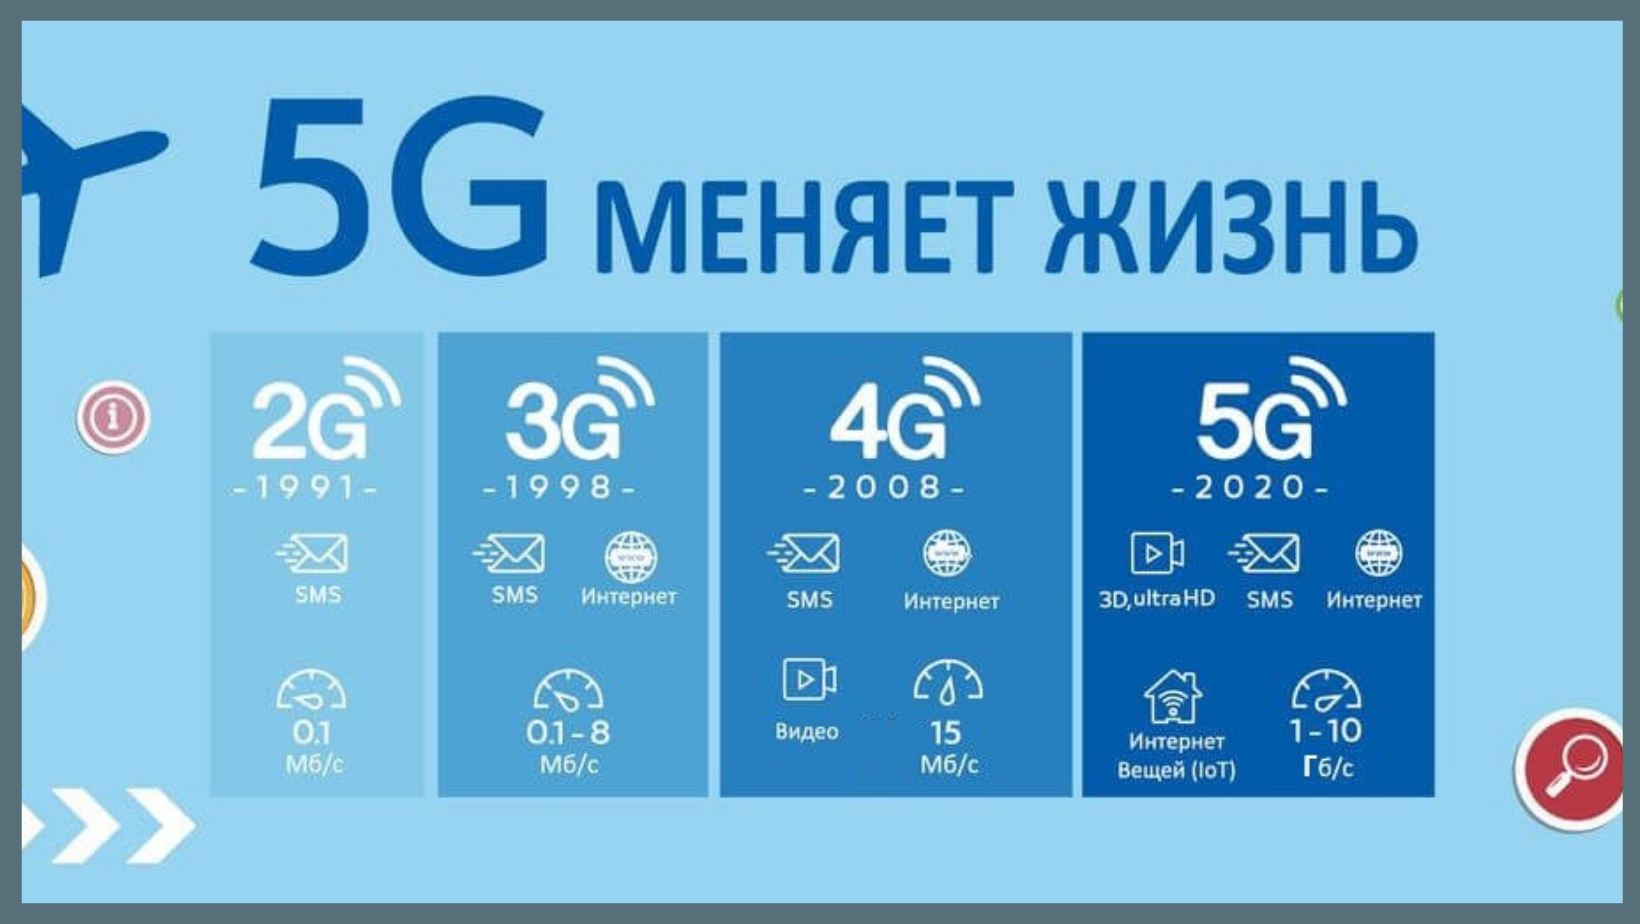 Интернет нового поколения. Технологии сотовой связи 2g 3g 4g. Поколения сотовой связи 2g 3g и 4g. Что такое 2g 3g 4g в сотовой связи. Скорости мобильного интернета 2g 3g 4g.